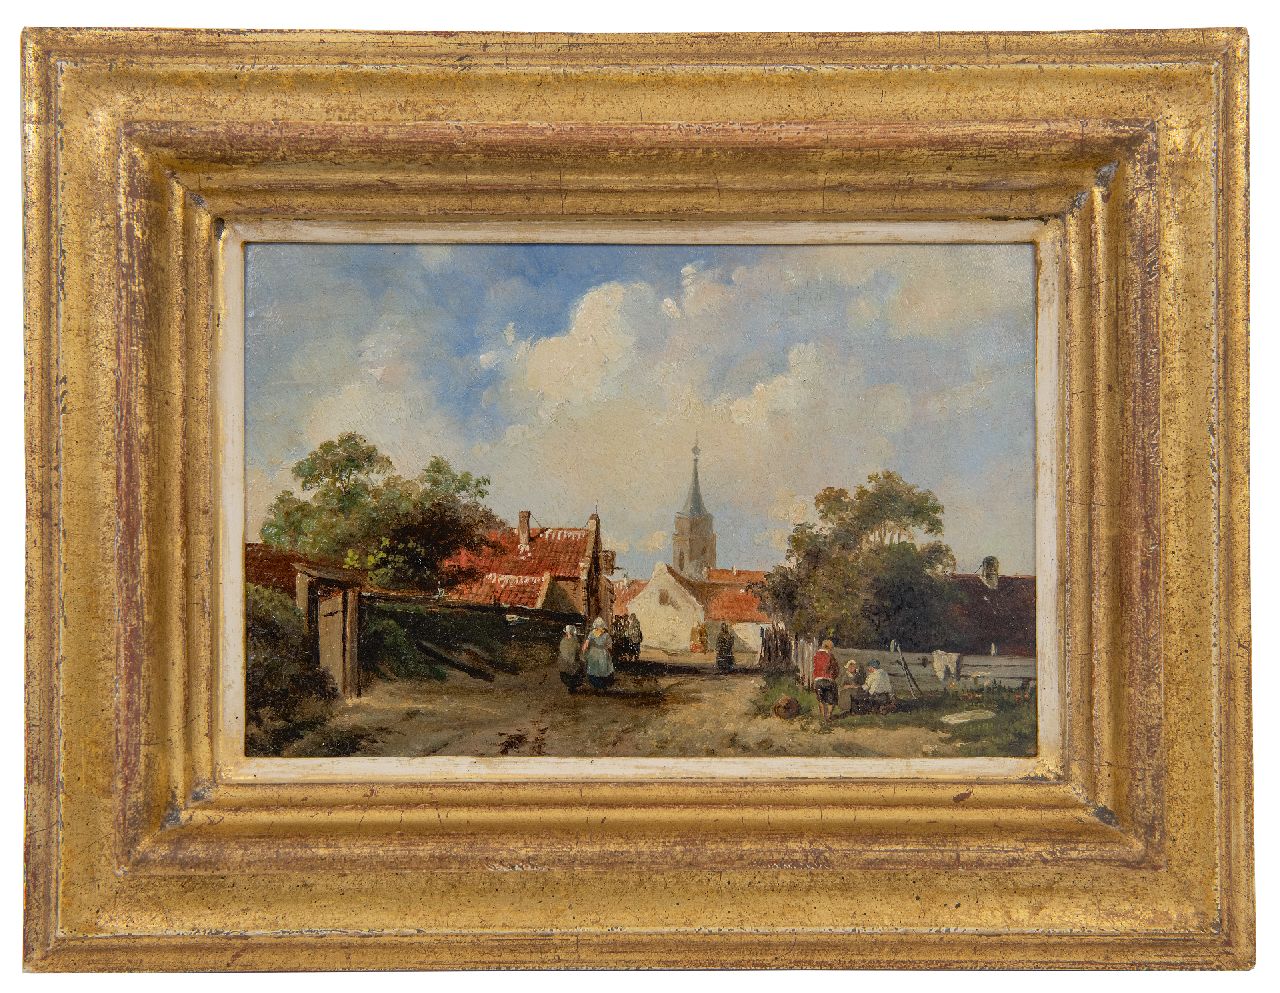 Leickert C.H.J.  | 'Charles' Henri Joseph Leickert | Schilderijen te koop aangeboden | Gezicht in een Hollands dorpje, olieverf op paneel 12,8 x 18,9 cm, gesigneerd rechtsonder met initialen